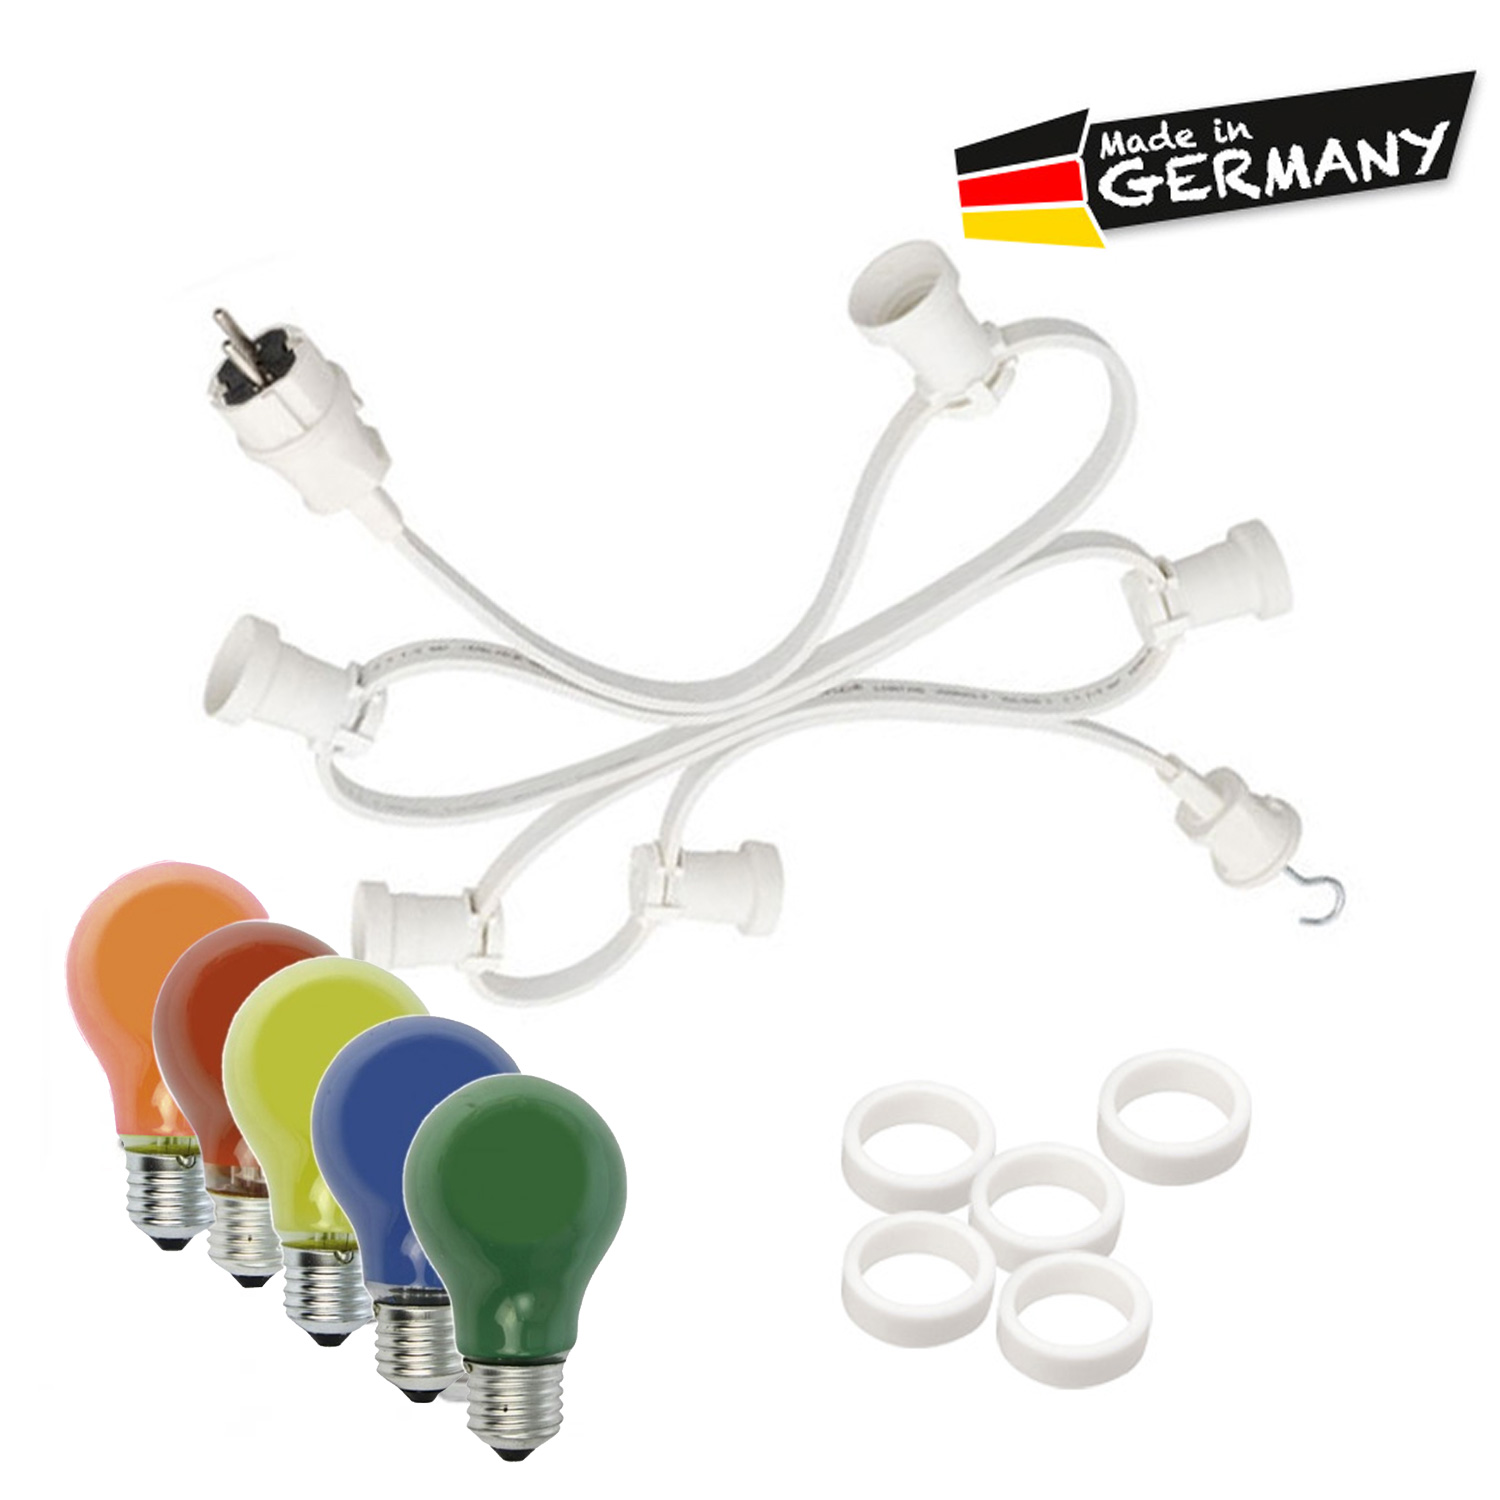 Illu-/Partylichterkette 20m - Außenlichterkette weiß - Made in Germany - 40 x bunte 25W Glühlampen